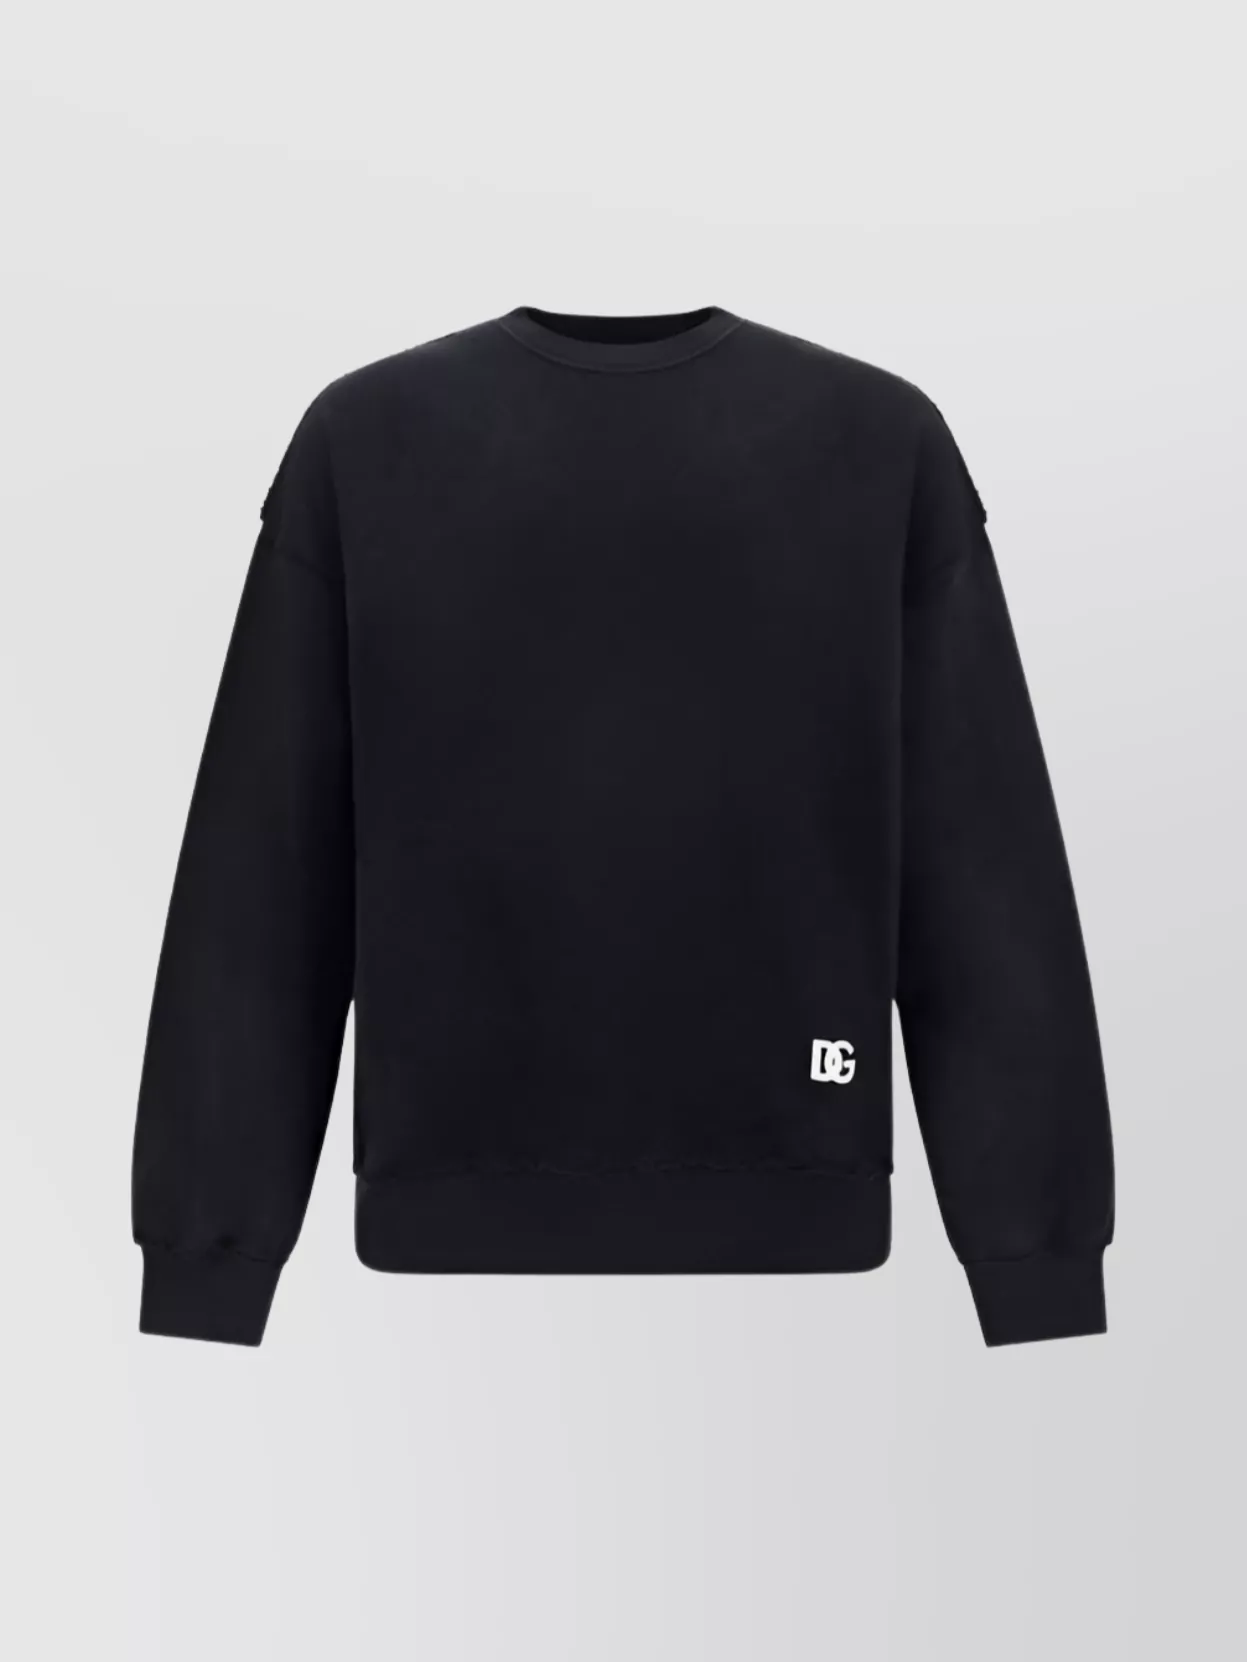 Shop Dolce & Gabbana Back Applique Cotton Sweatshirt Graphic Monochrome